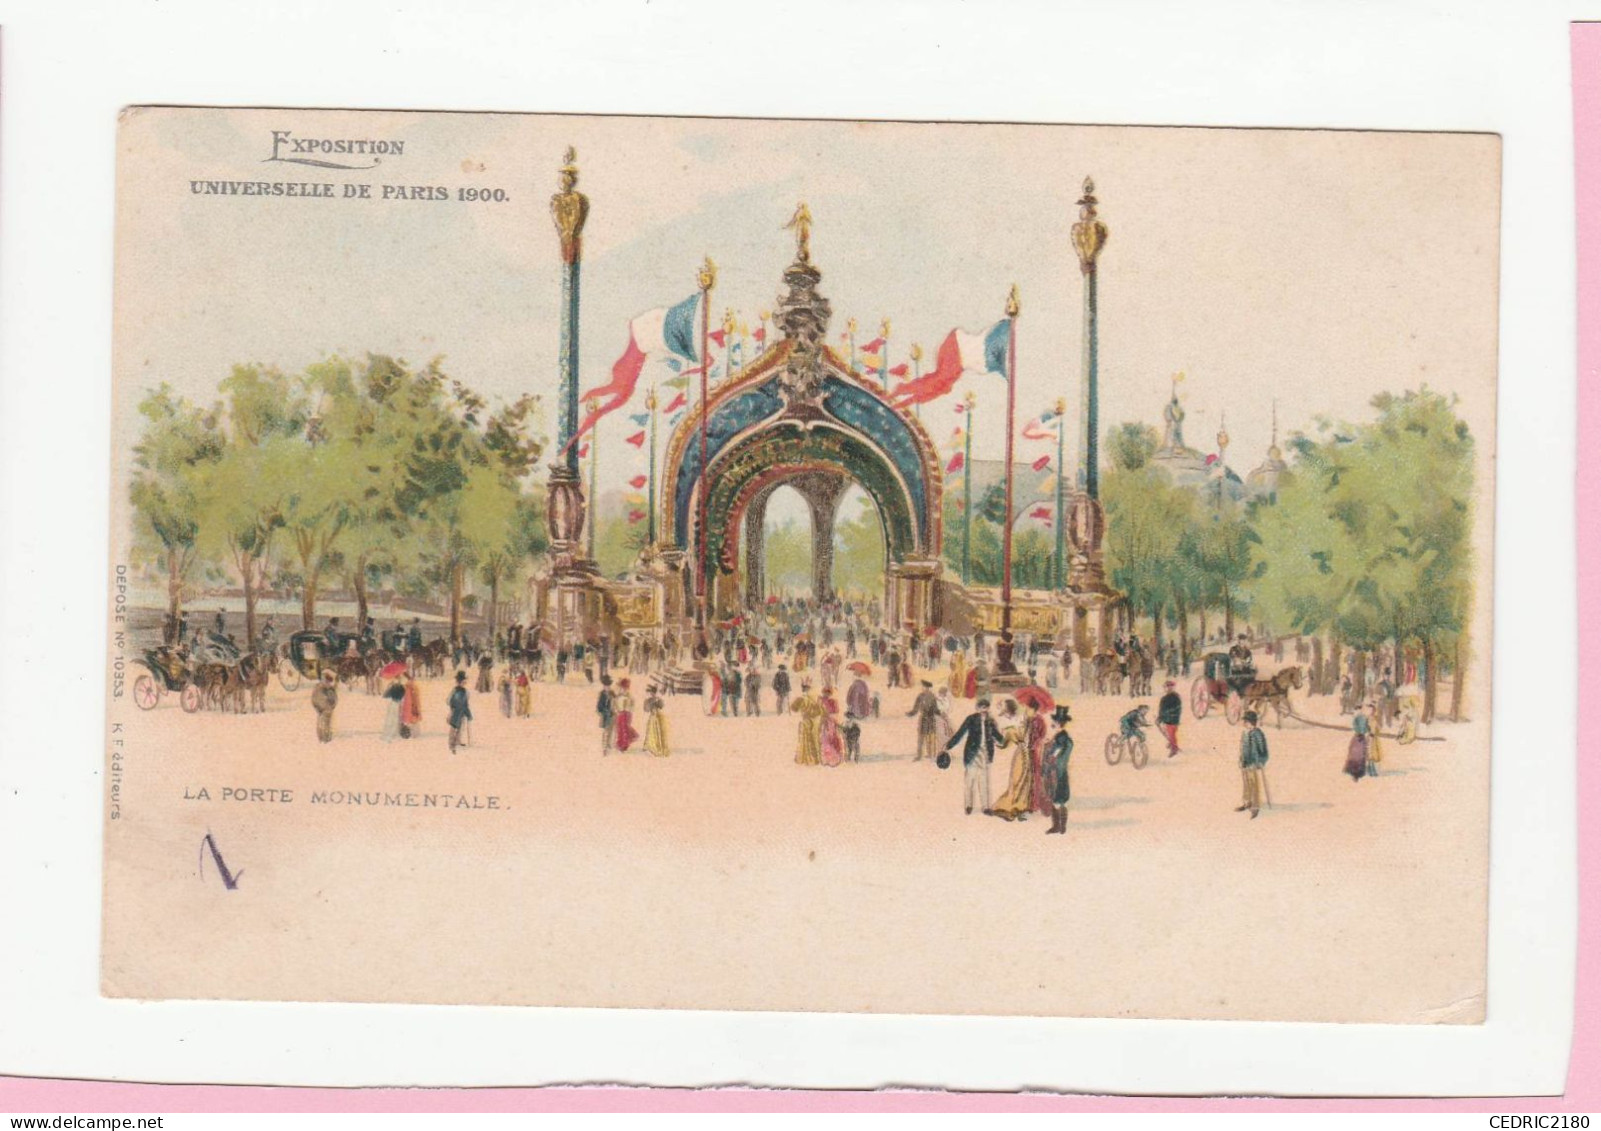 EXPOSITION UNIVERSELLE DE PARIS 1900 LA PORTE MONUMENTALE - Exhibitions